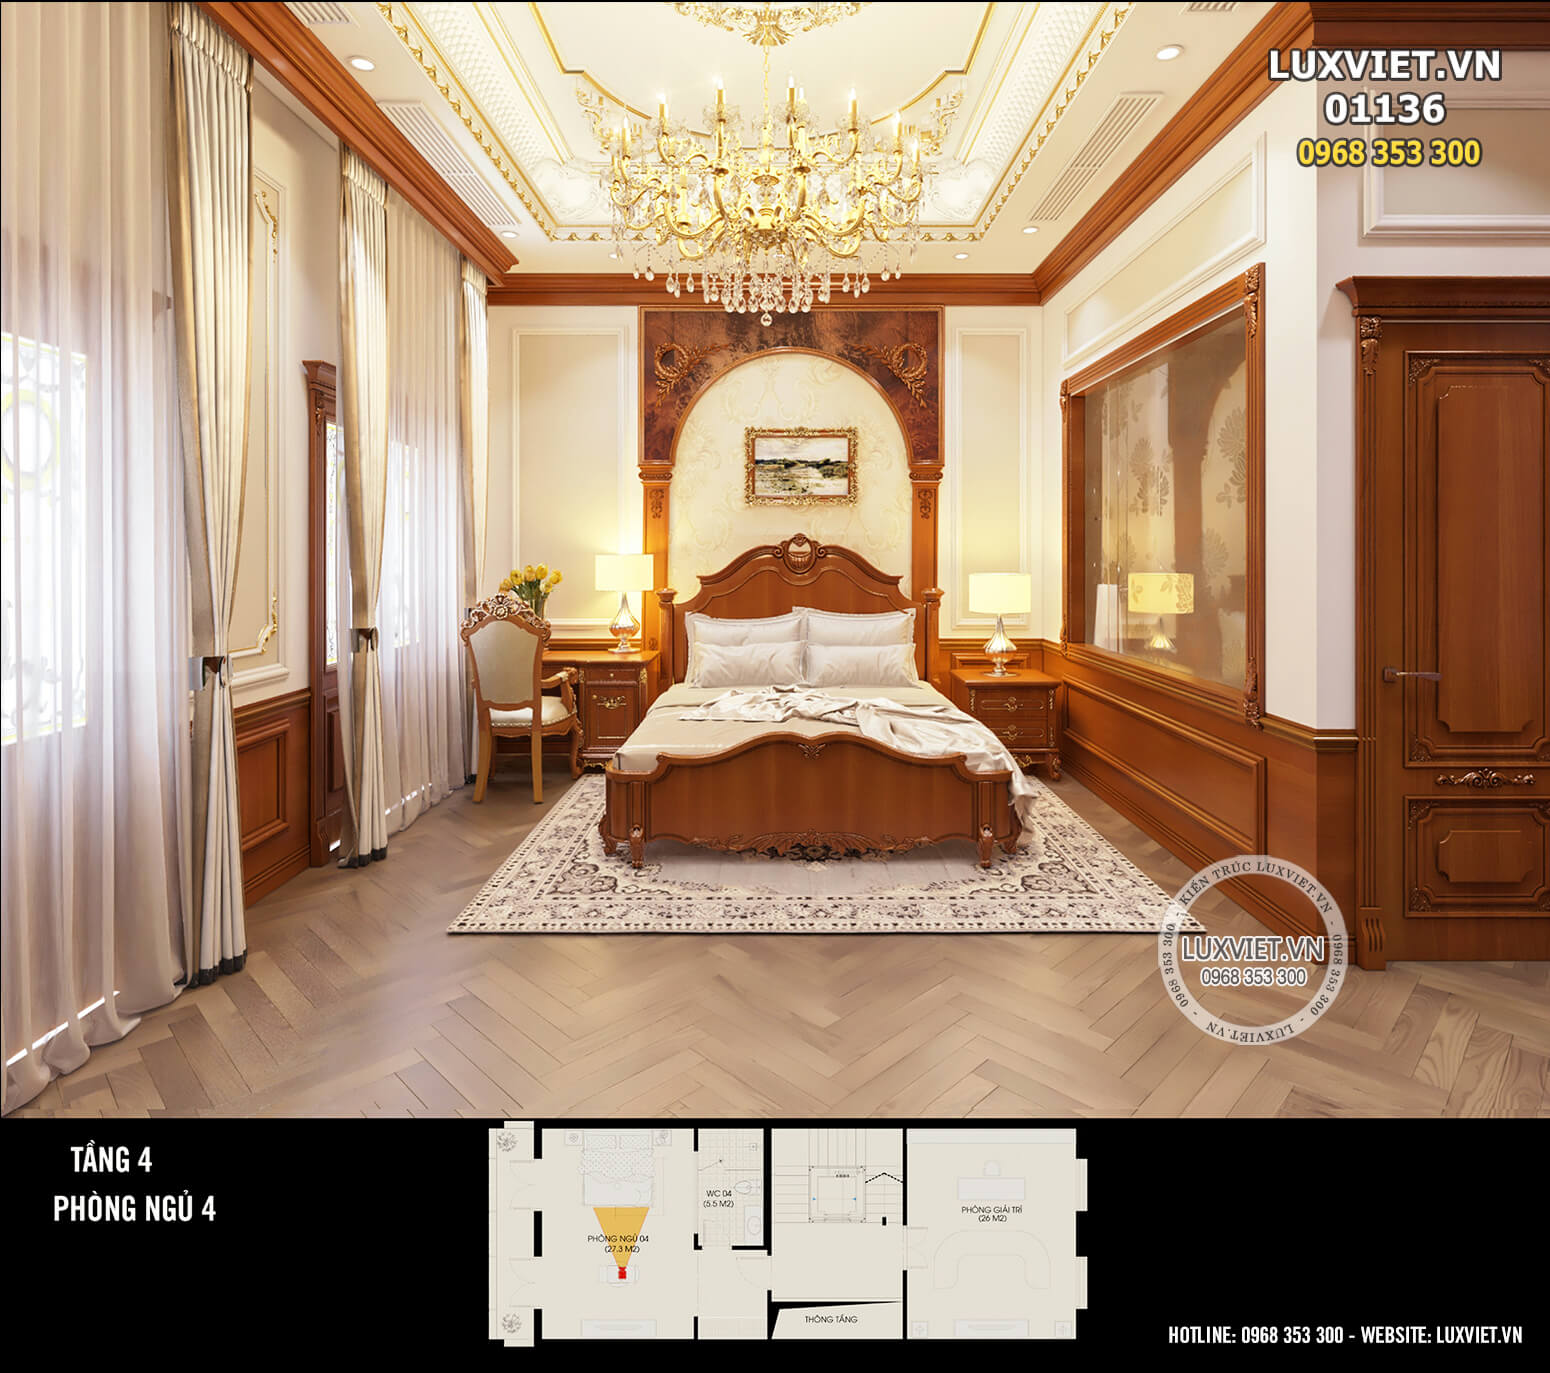 Mẫu nội thất phòng ngủ tân cổ điển kiểu Pháp sang trọng, nhẹ nhàng và thanh lịch